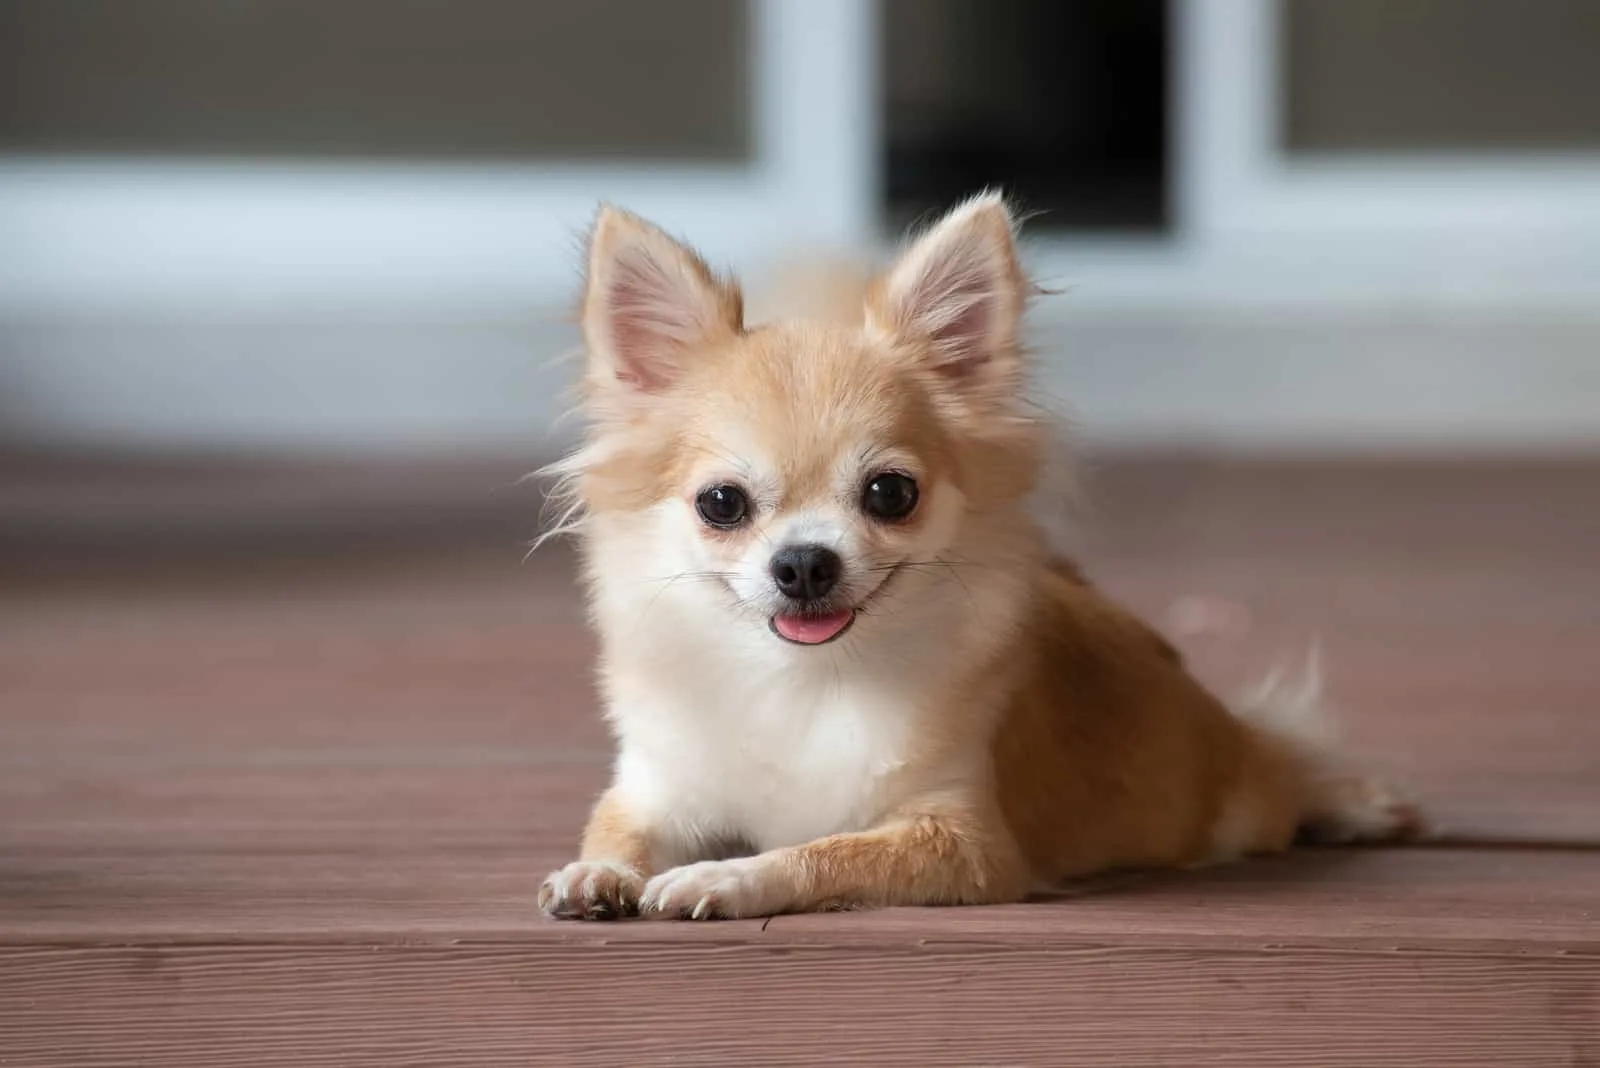 brauner Chihuahua auf dem Boden liegend